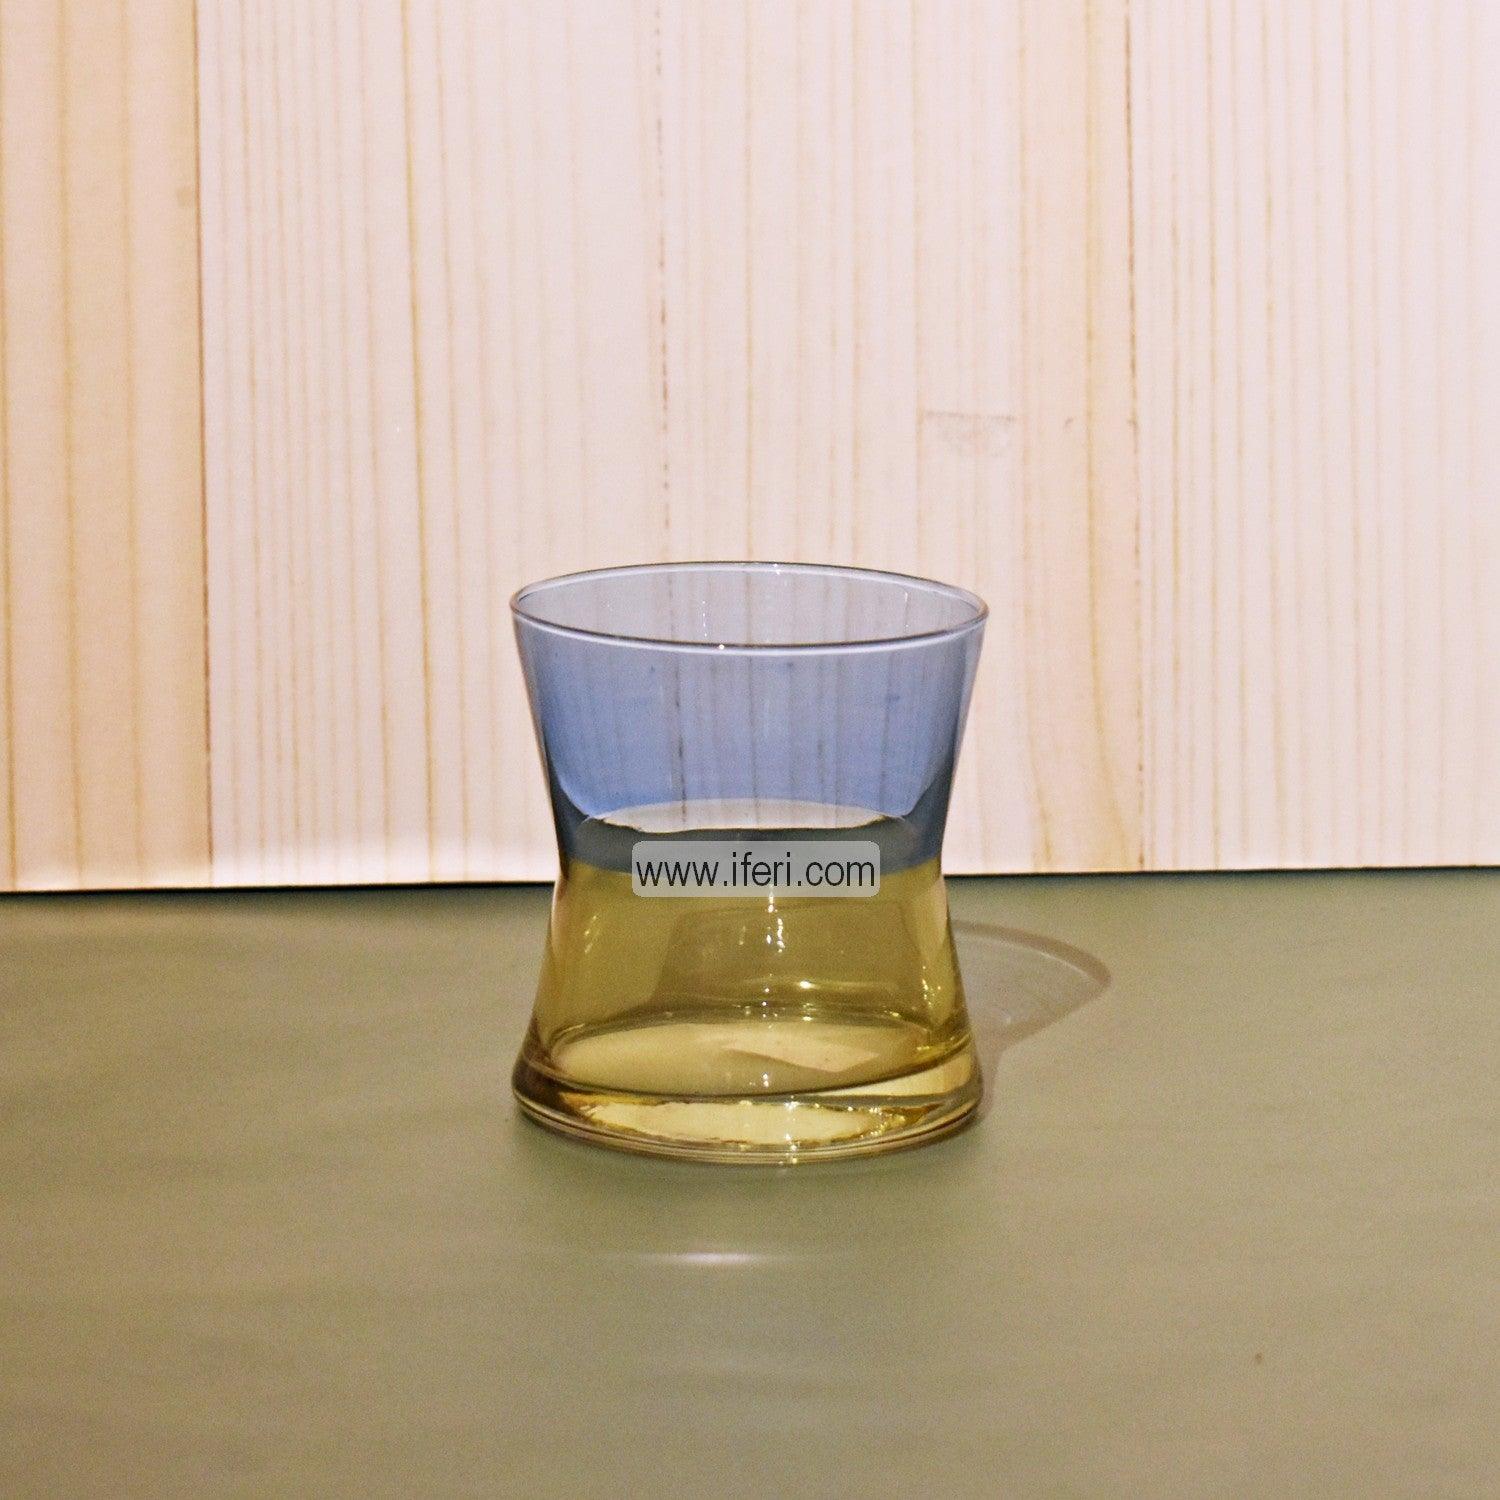 6 Pcs Exclusive Turkish Water Juice Glass Set GA2015 Price in Bangladesh - iferi.com